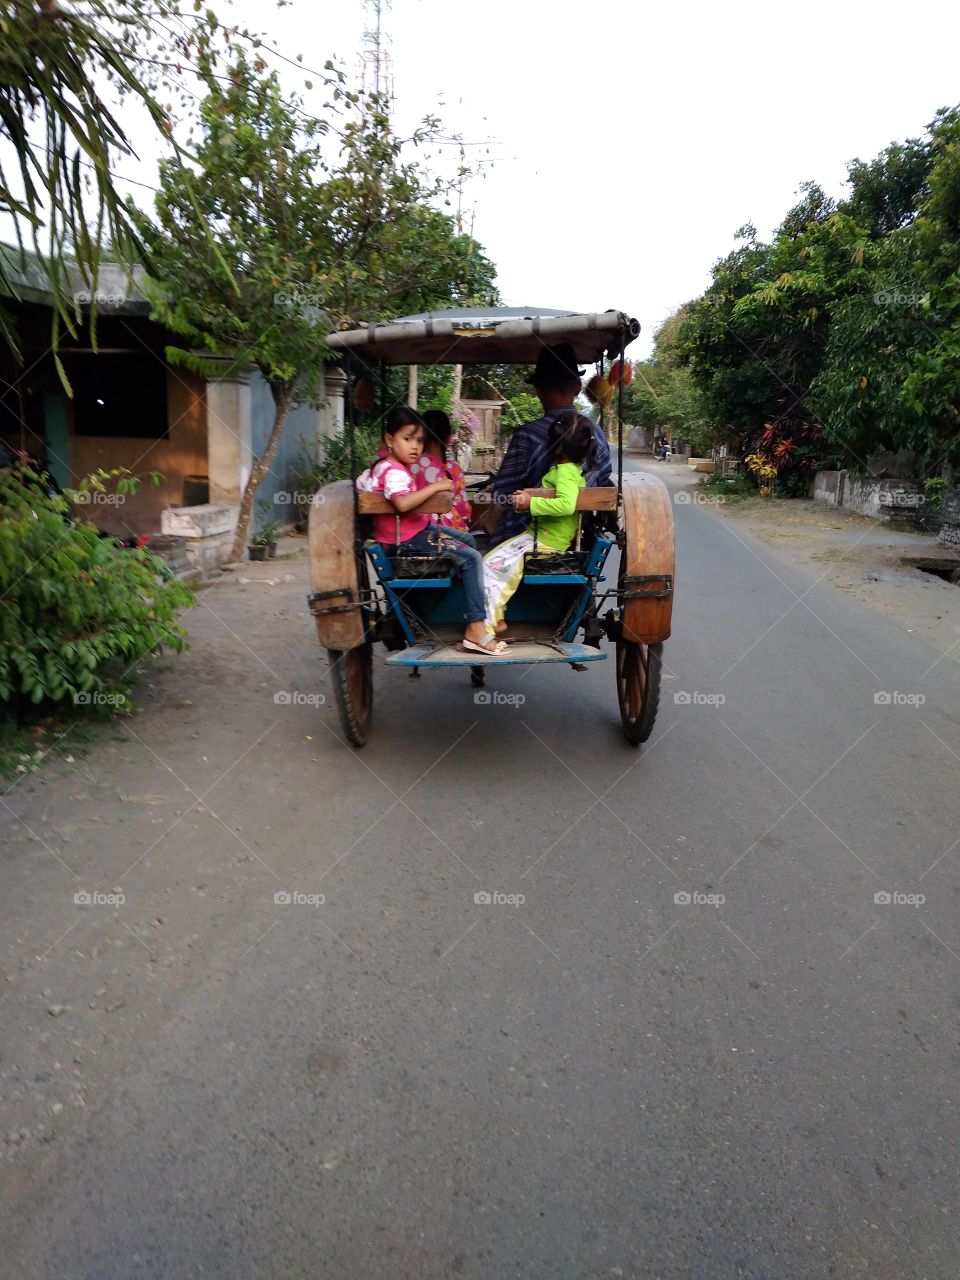 Traditional transportation of Java